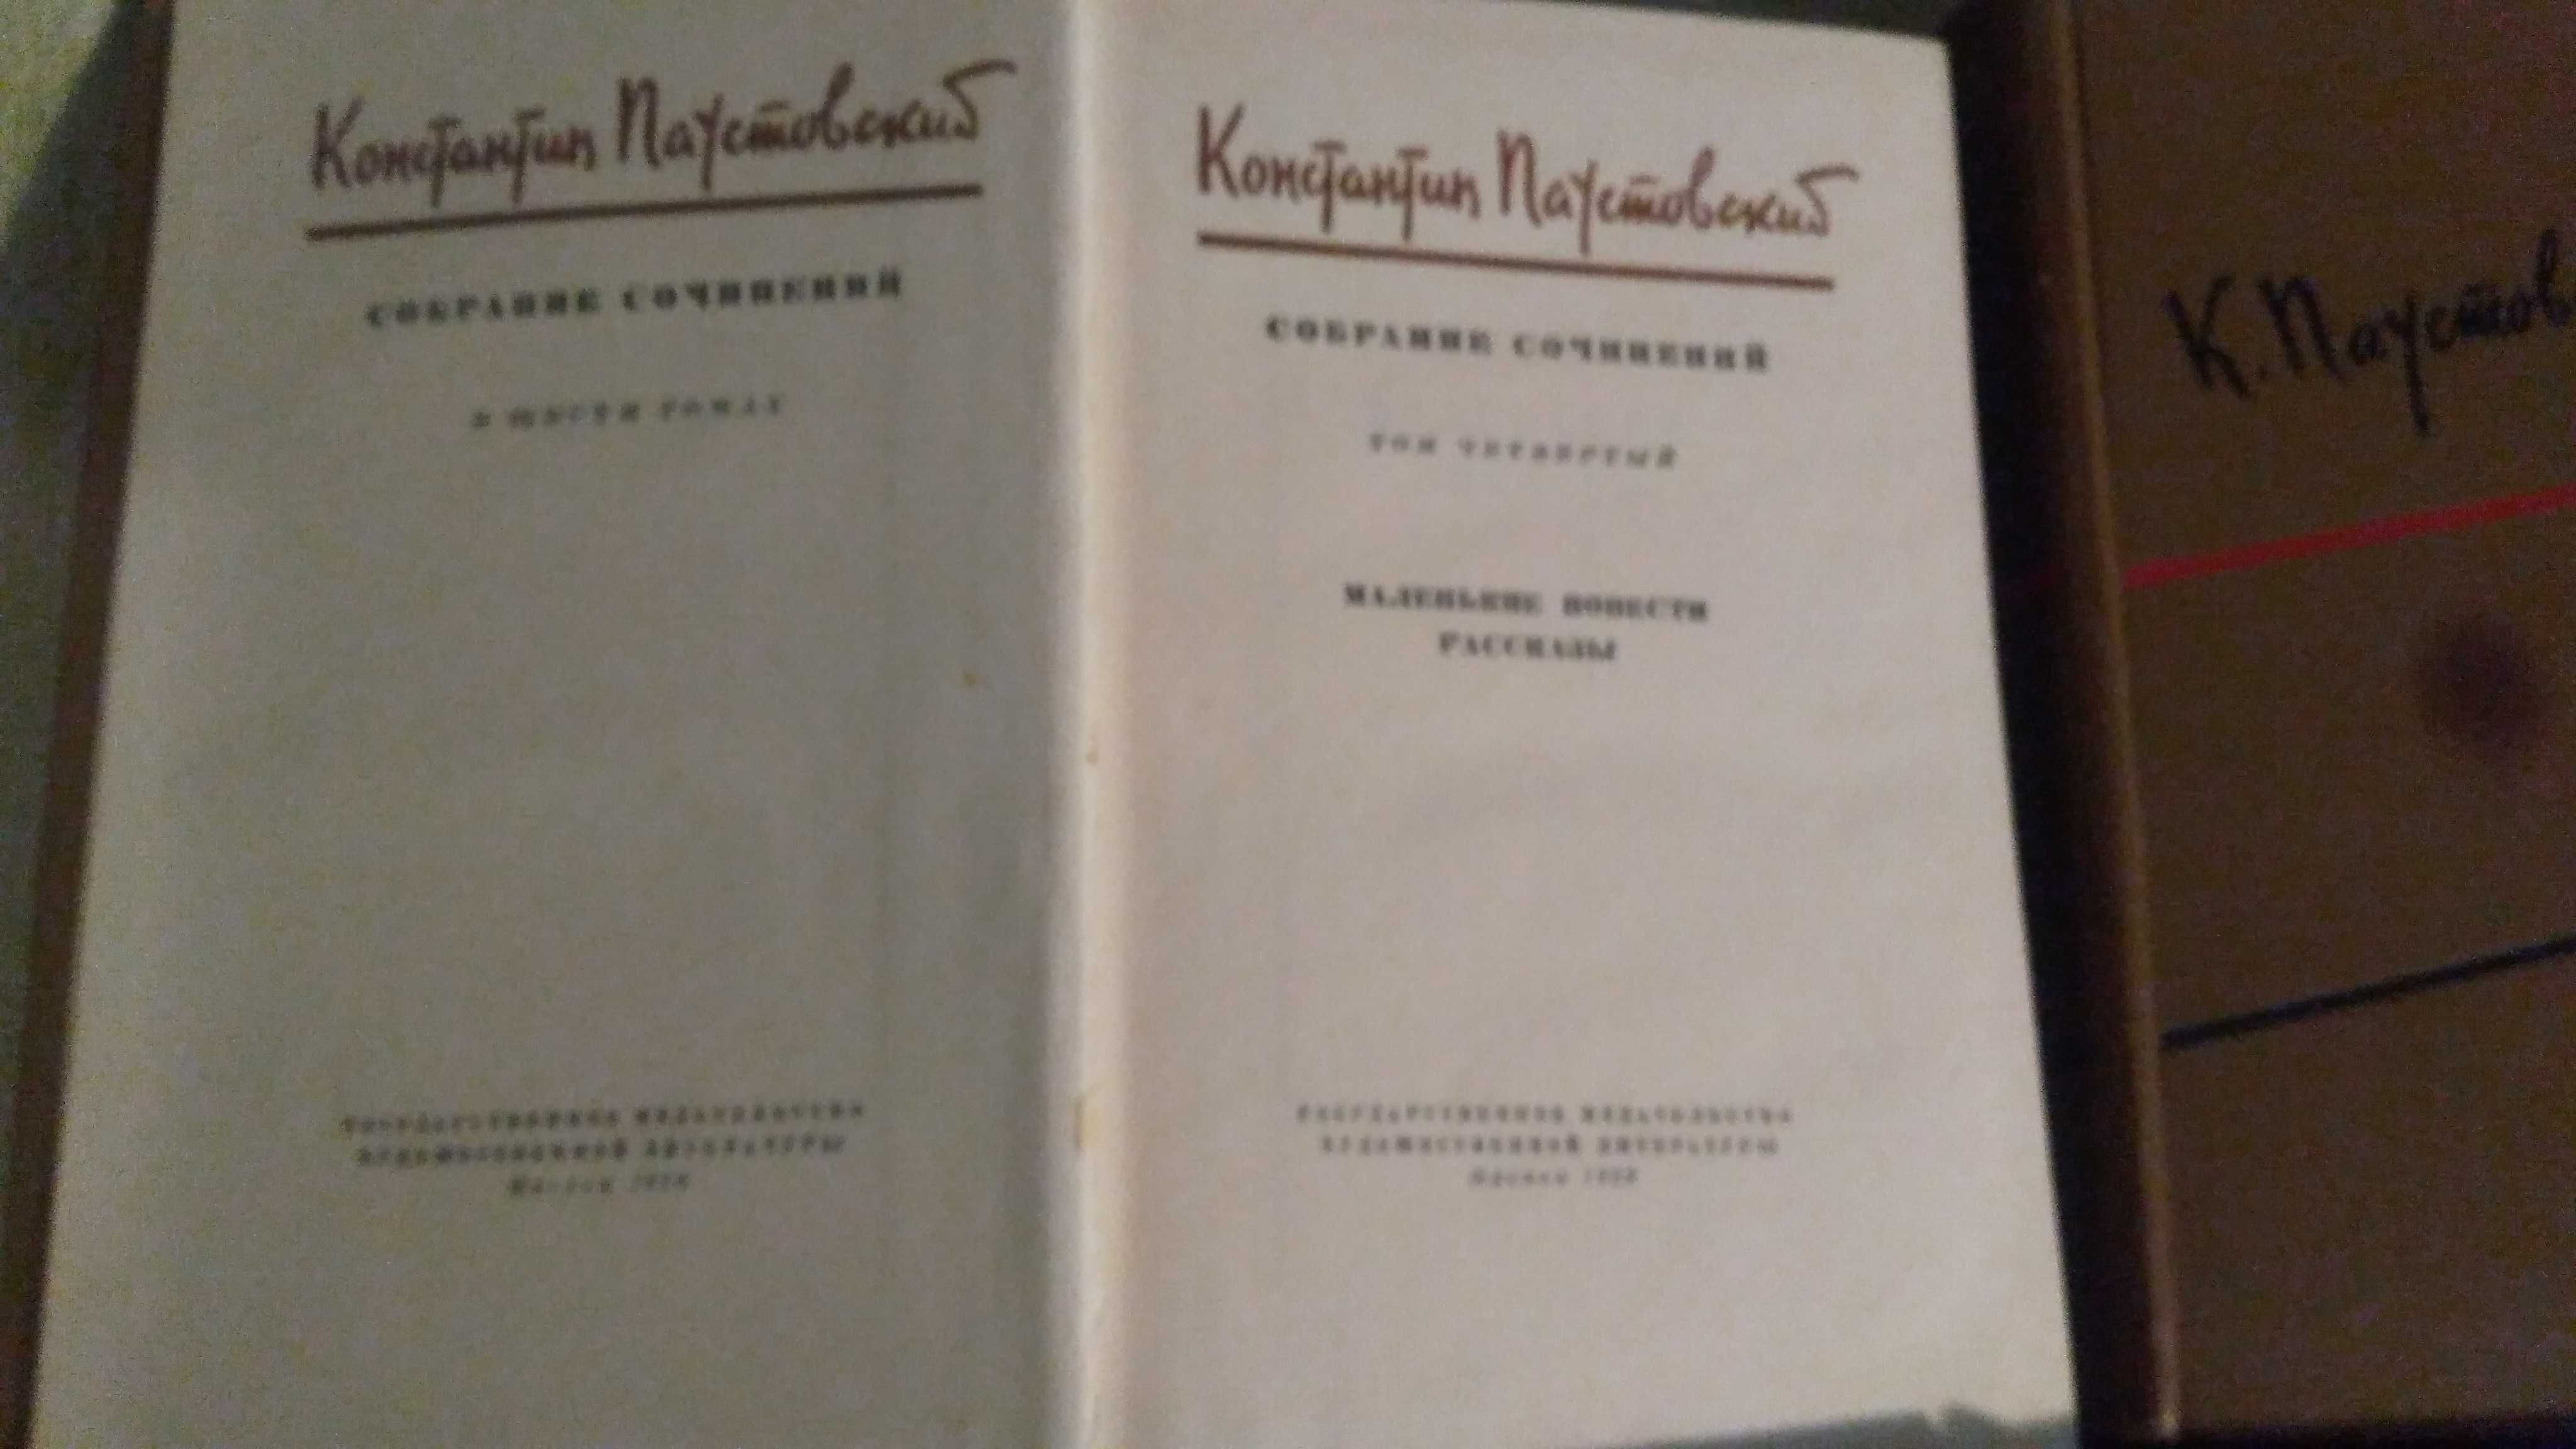 Паустовский 4 тома 6 томного